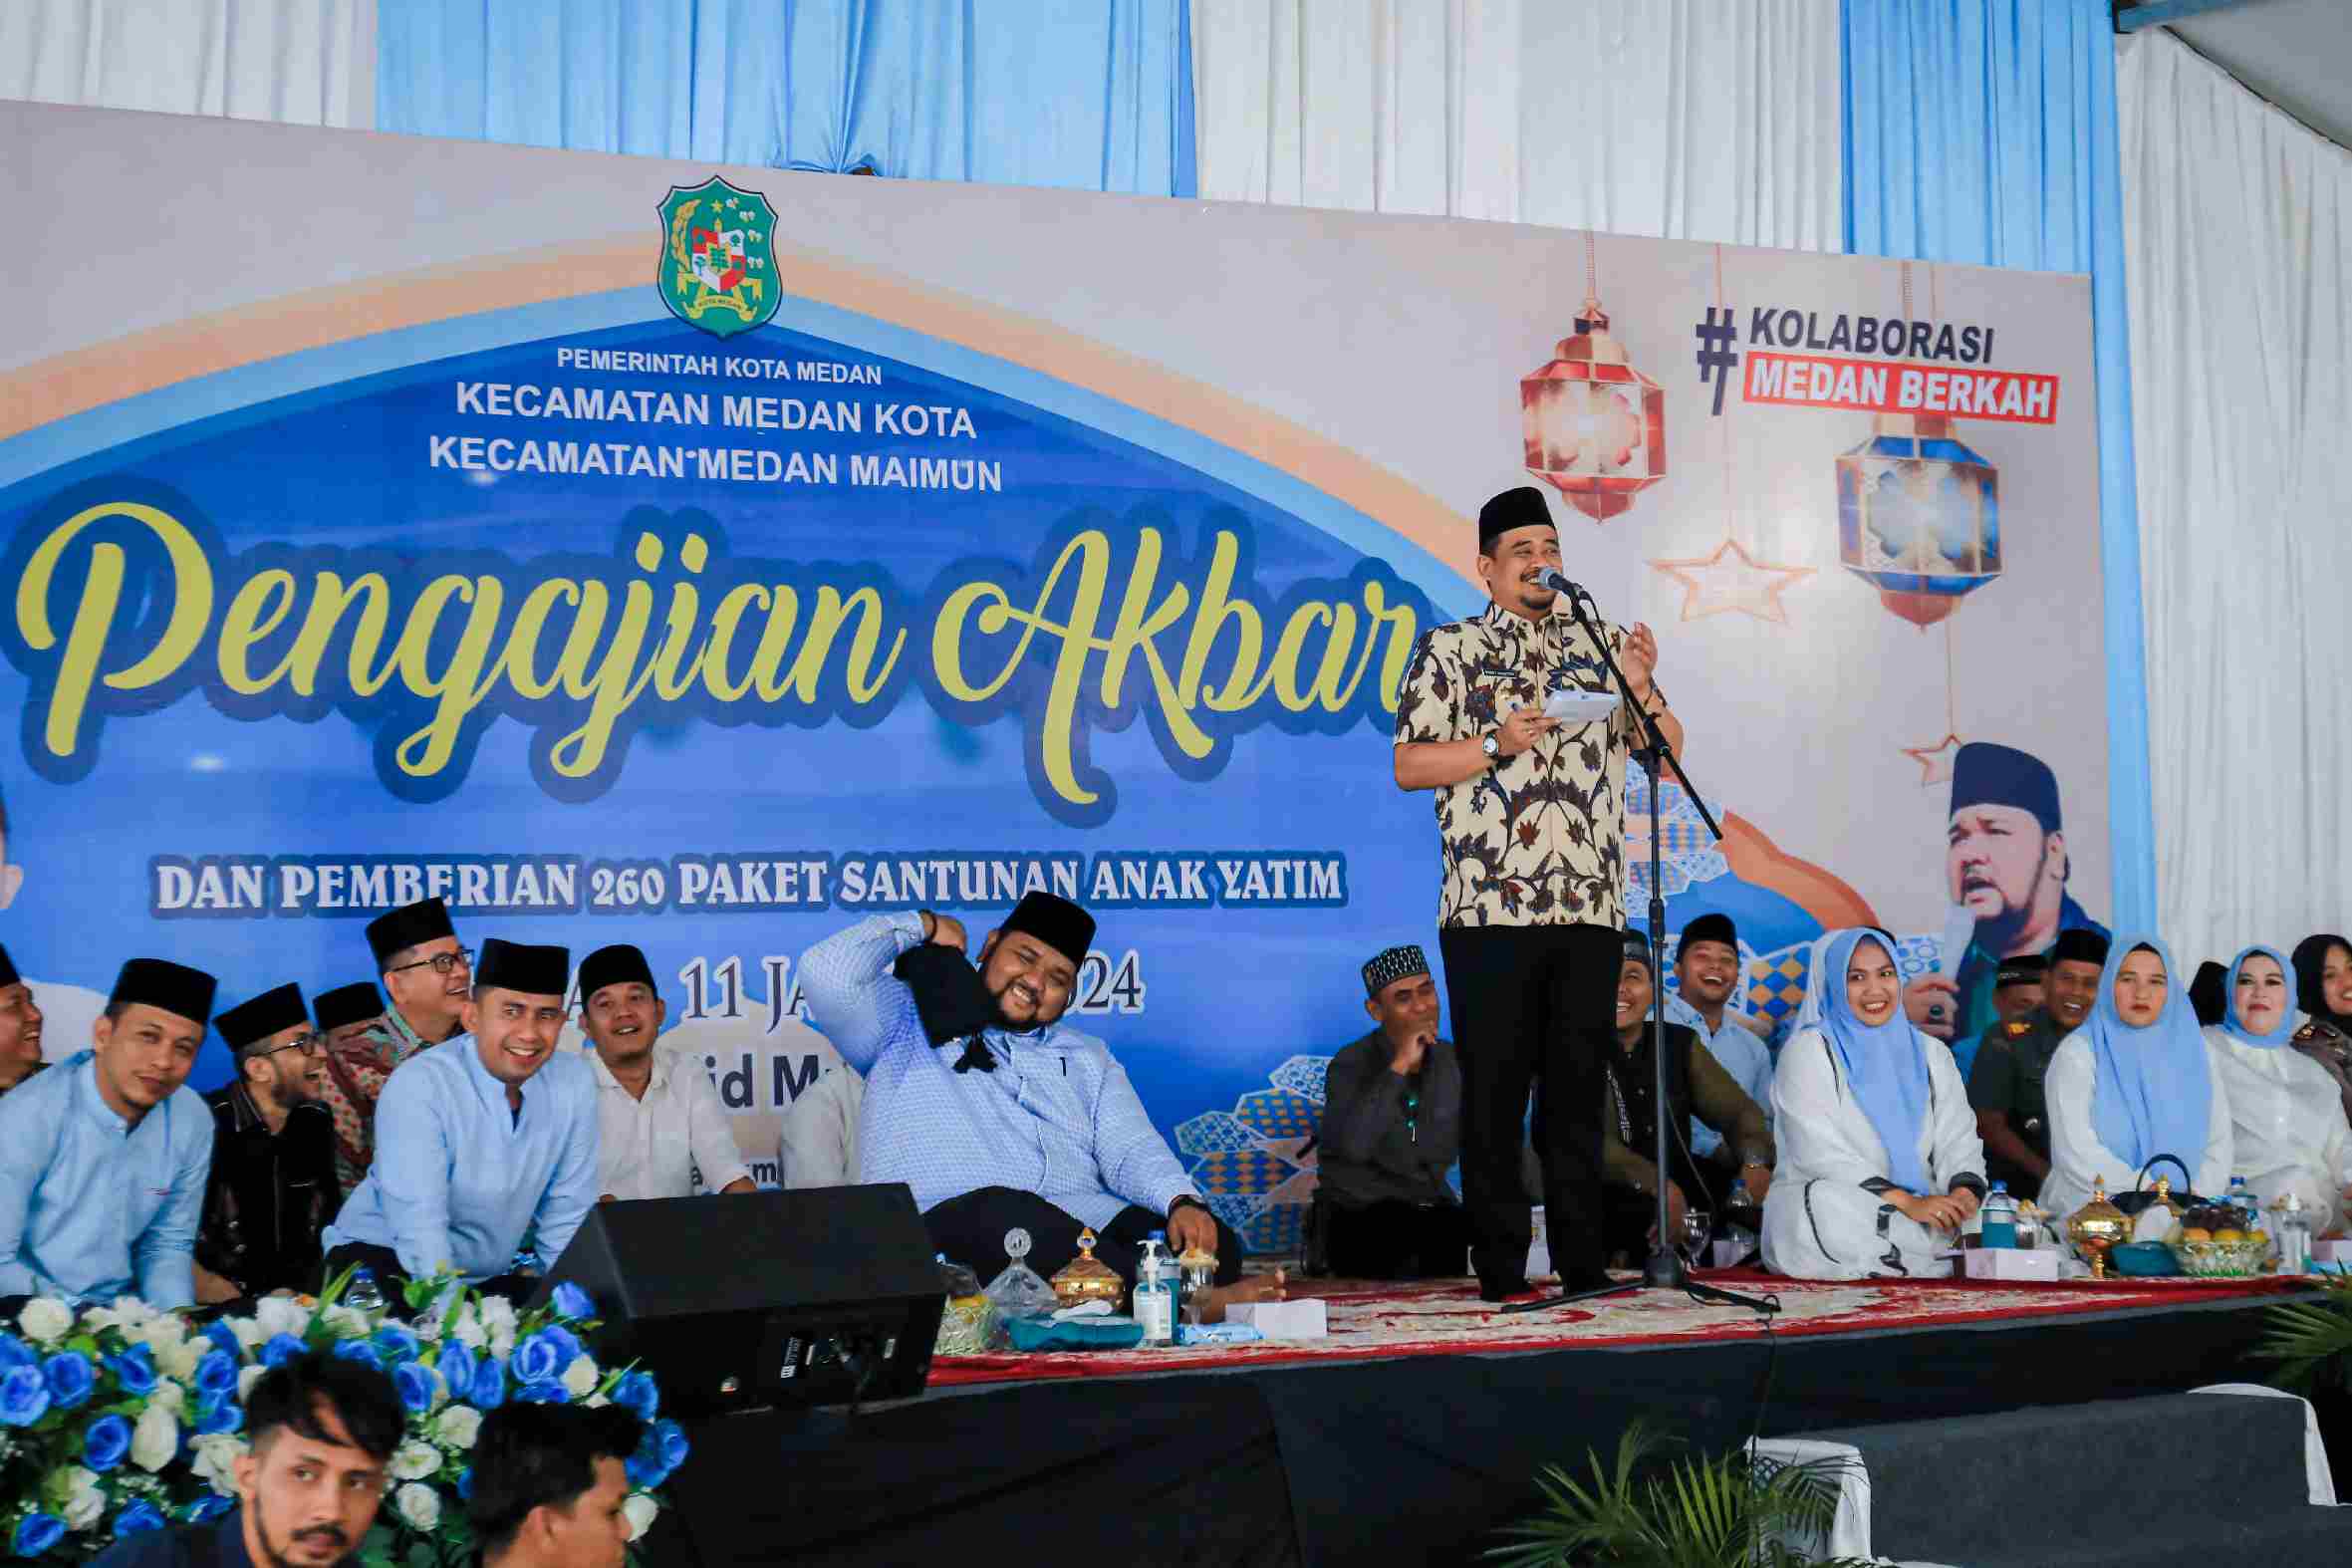 Bobby Nasution yang menghadiri pengajian Akbar Kolaborasi Kecamatan Medan Kota dan Kecamatan Medan Maimun